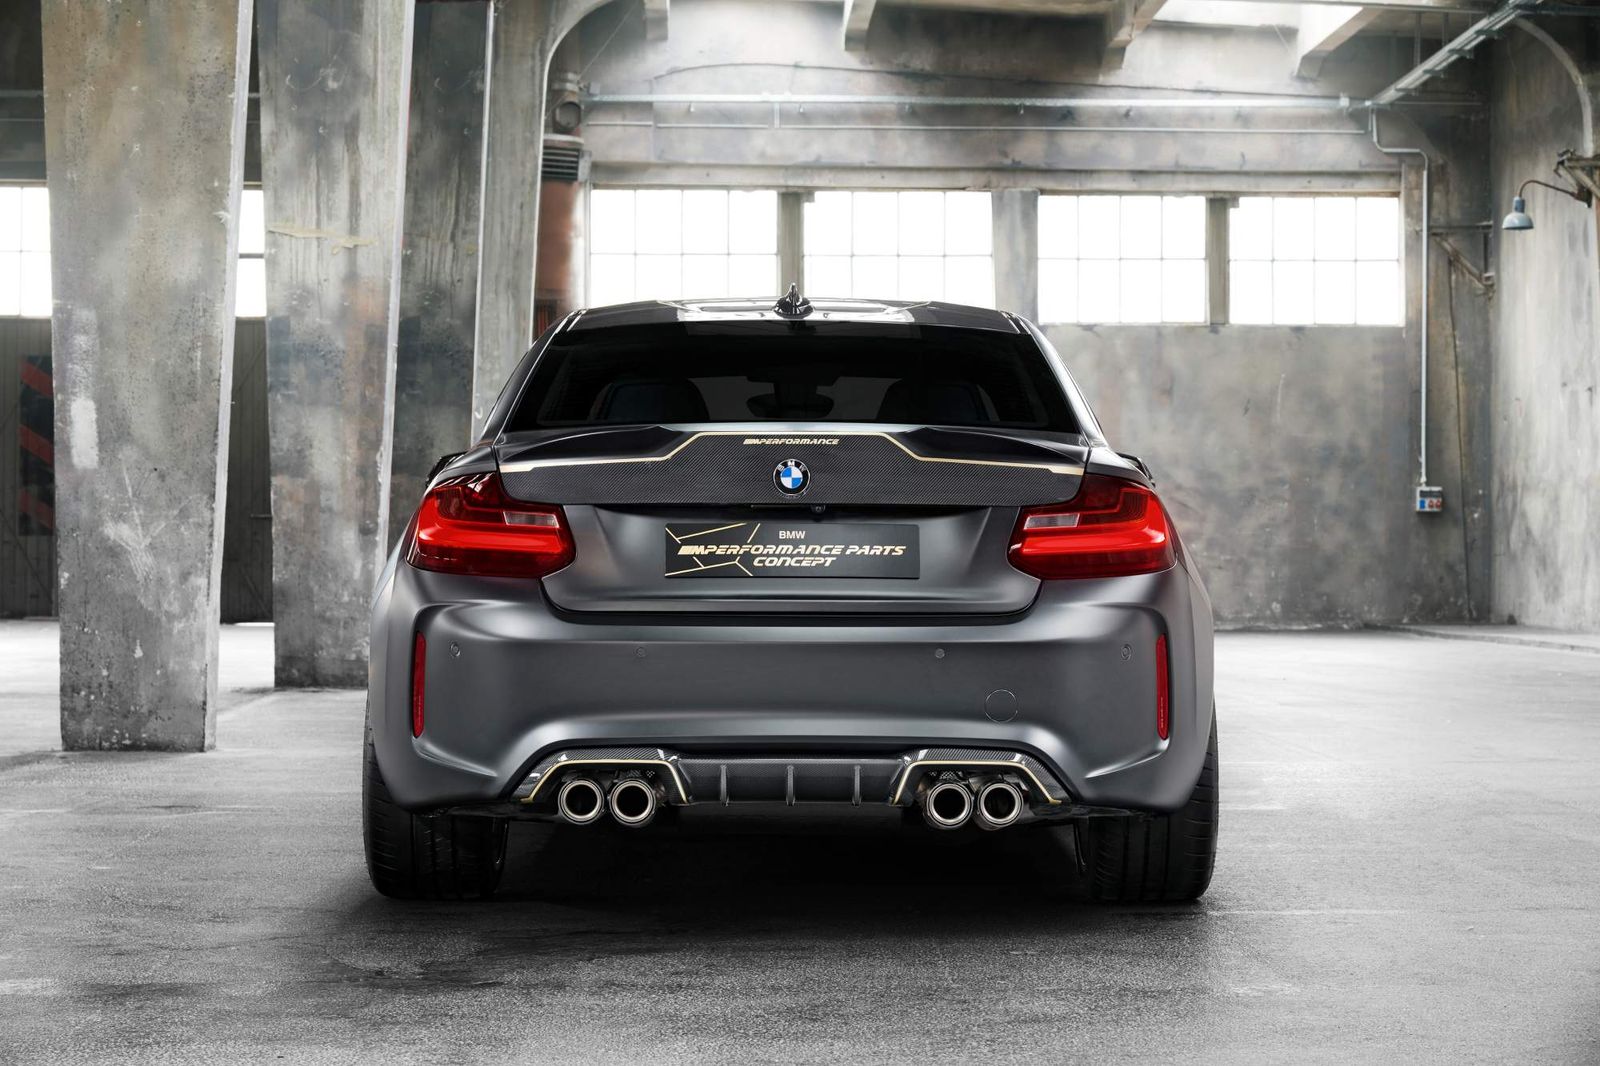 BMW-M-Performance-Parts-Concept-4